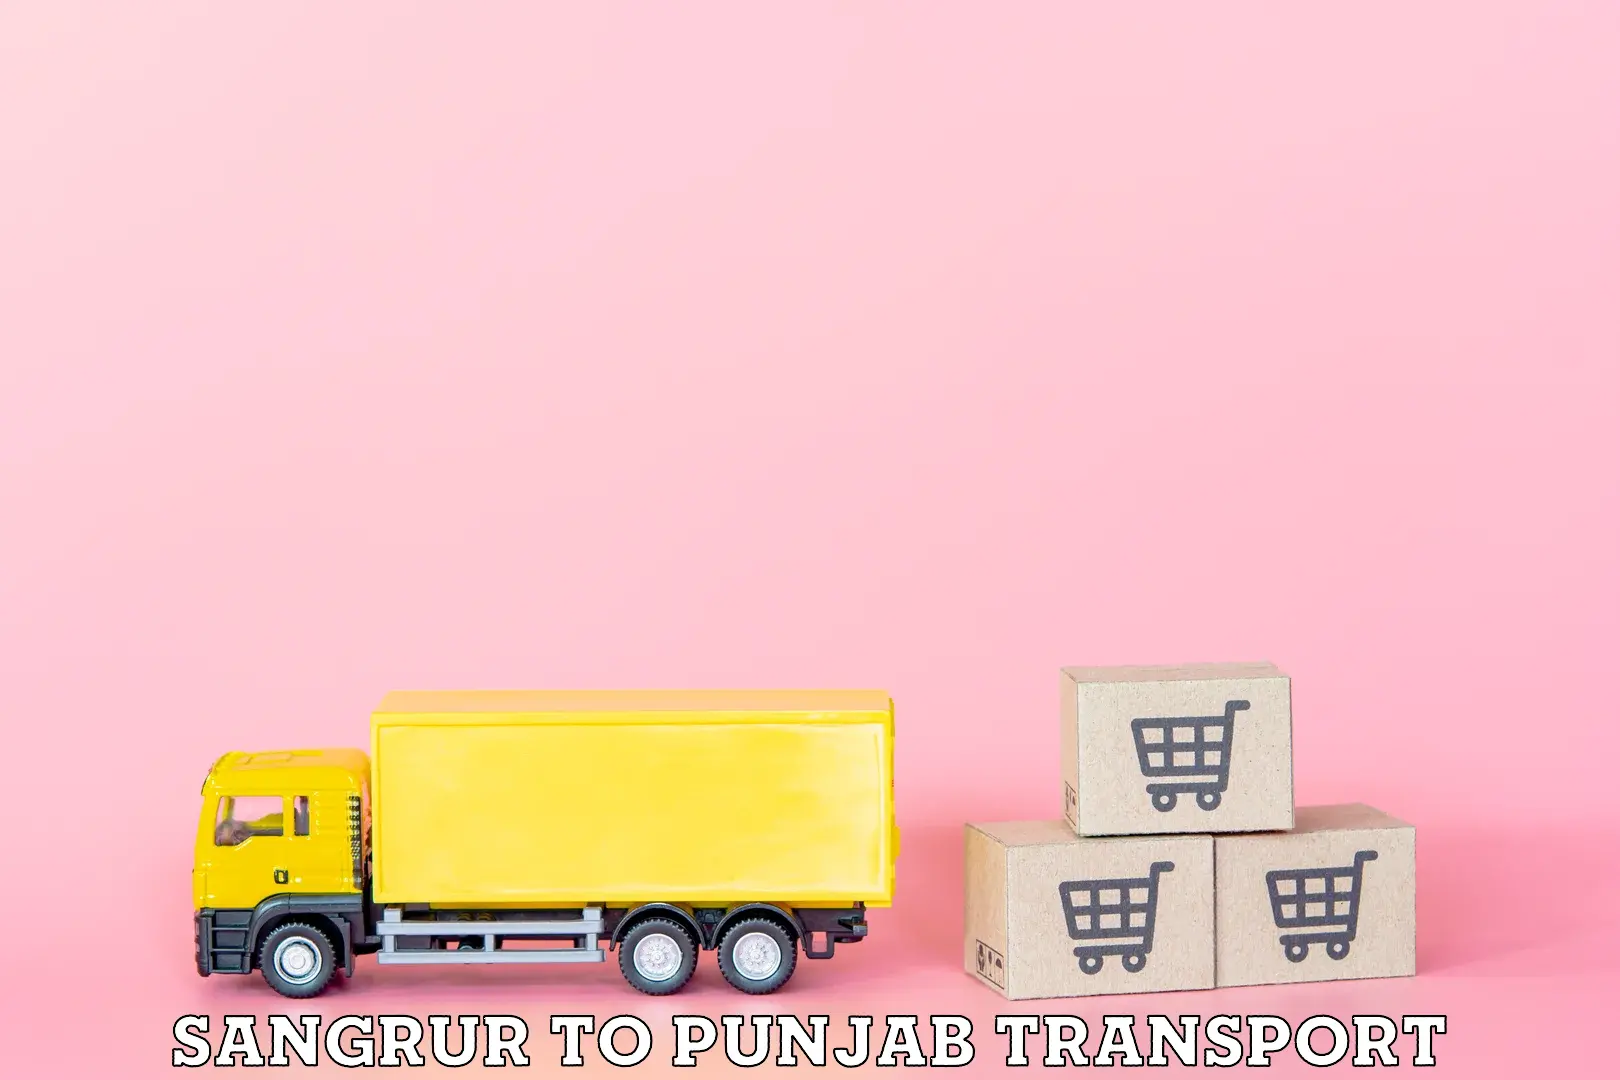 Cycle transportation service Sangrur to Punjab